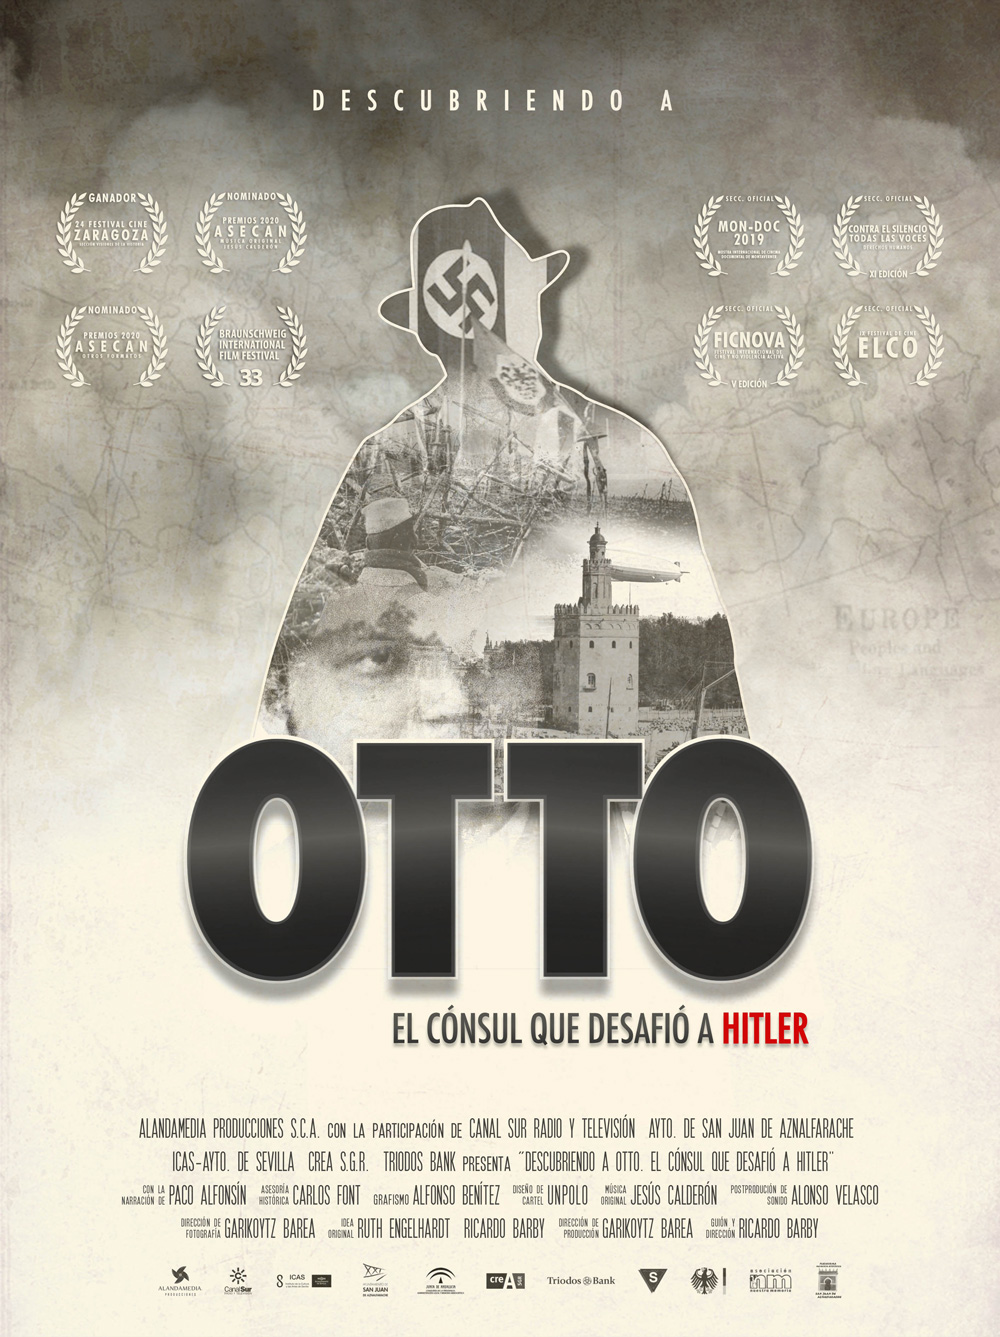 Discovering  Otto: The consul who faced Hitler